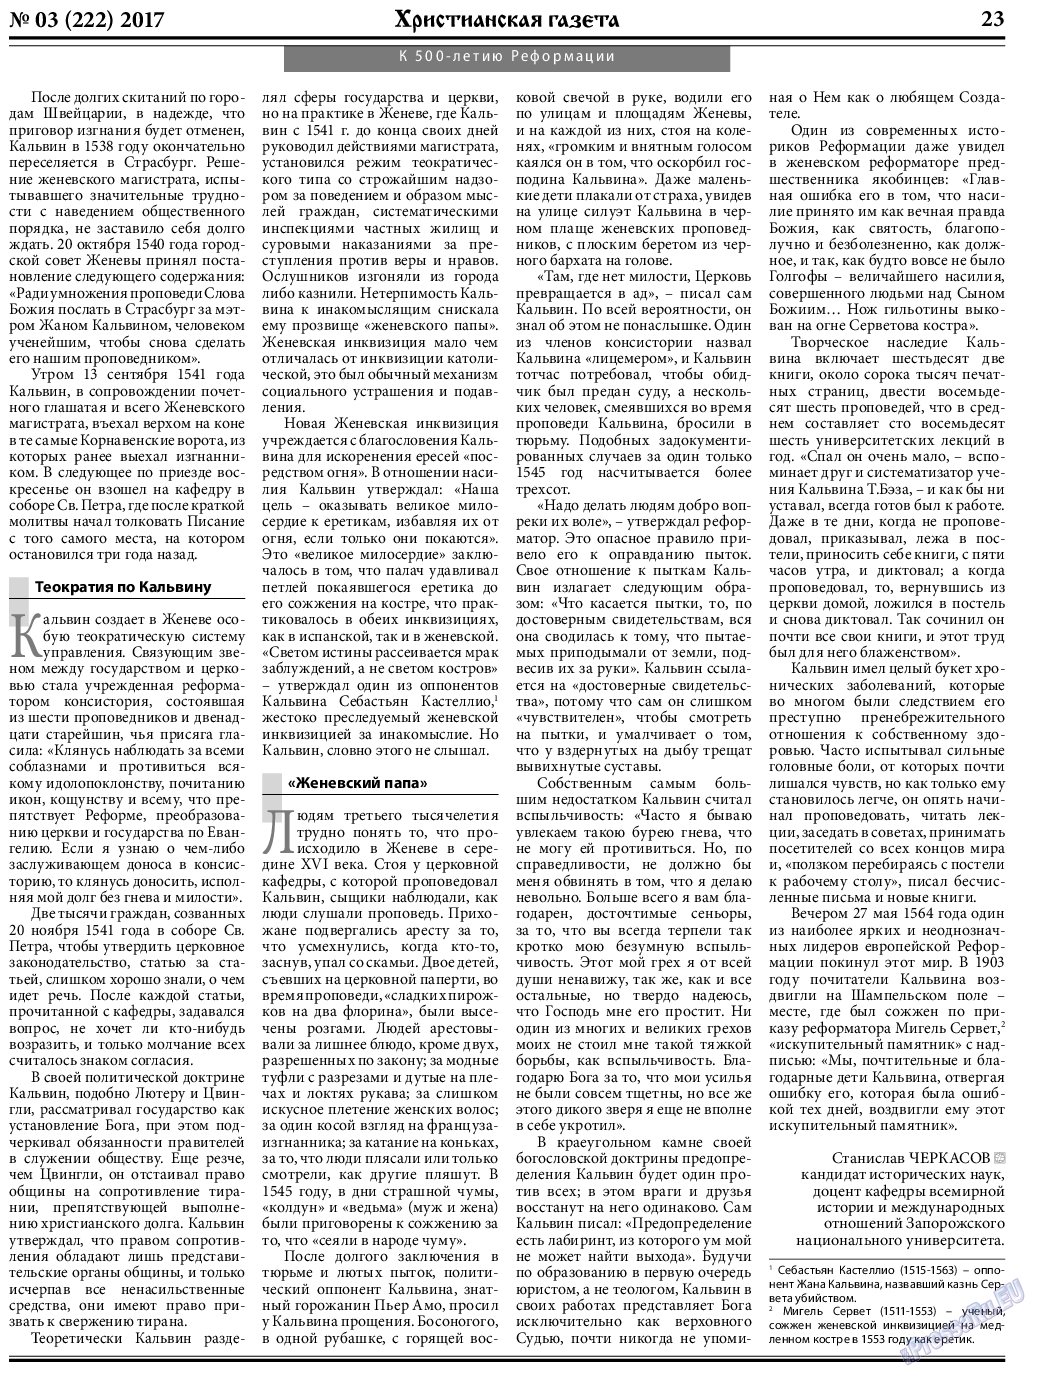 Христианская газета, газета. 2017 №3 стр.23